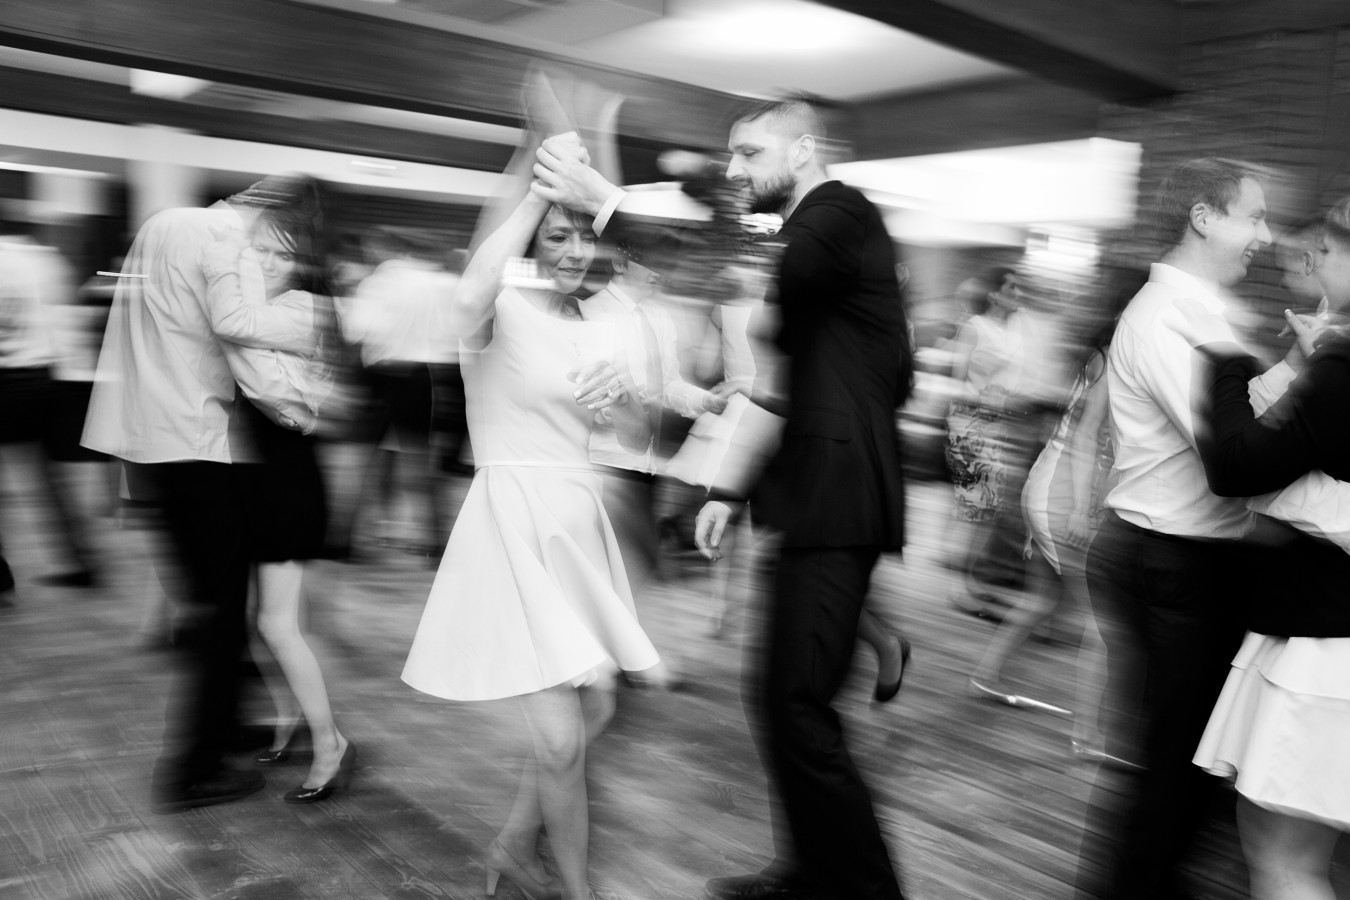 fotograf wroclaw follow-love portfolio zdjecia slubne inspiracje wesele plener slubny sesja slubna